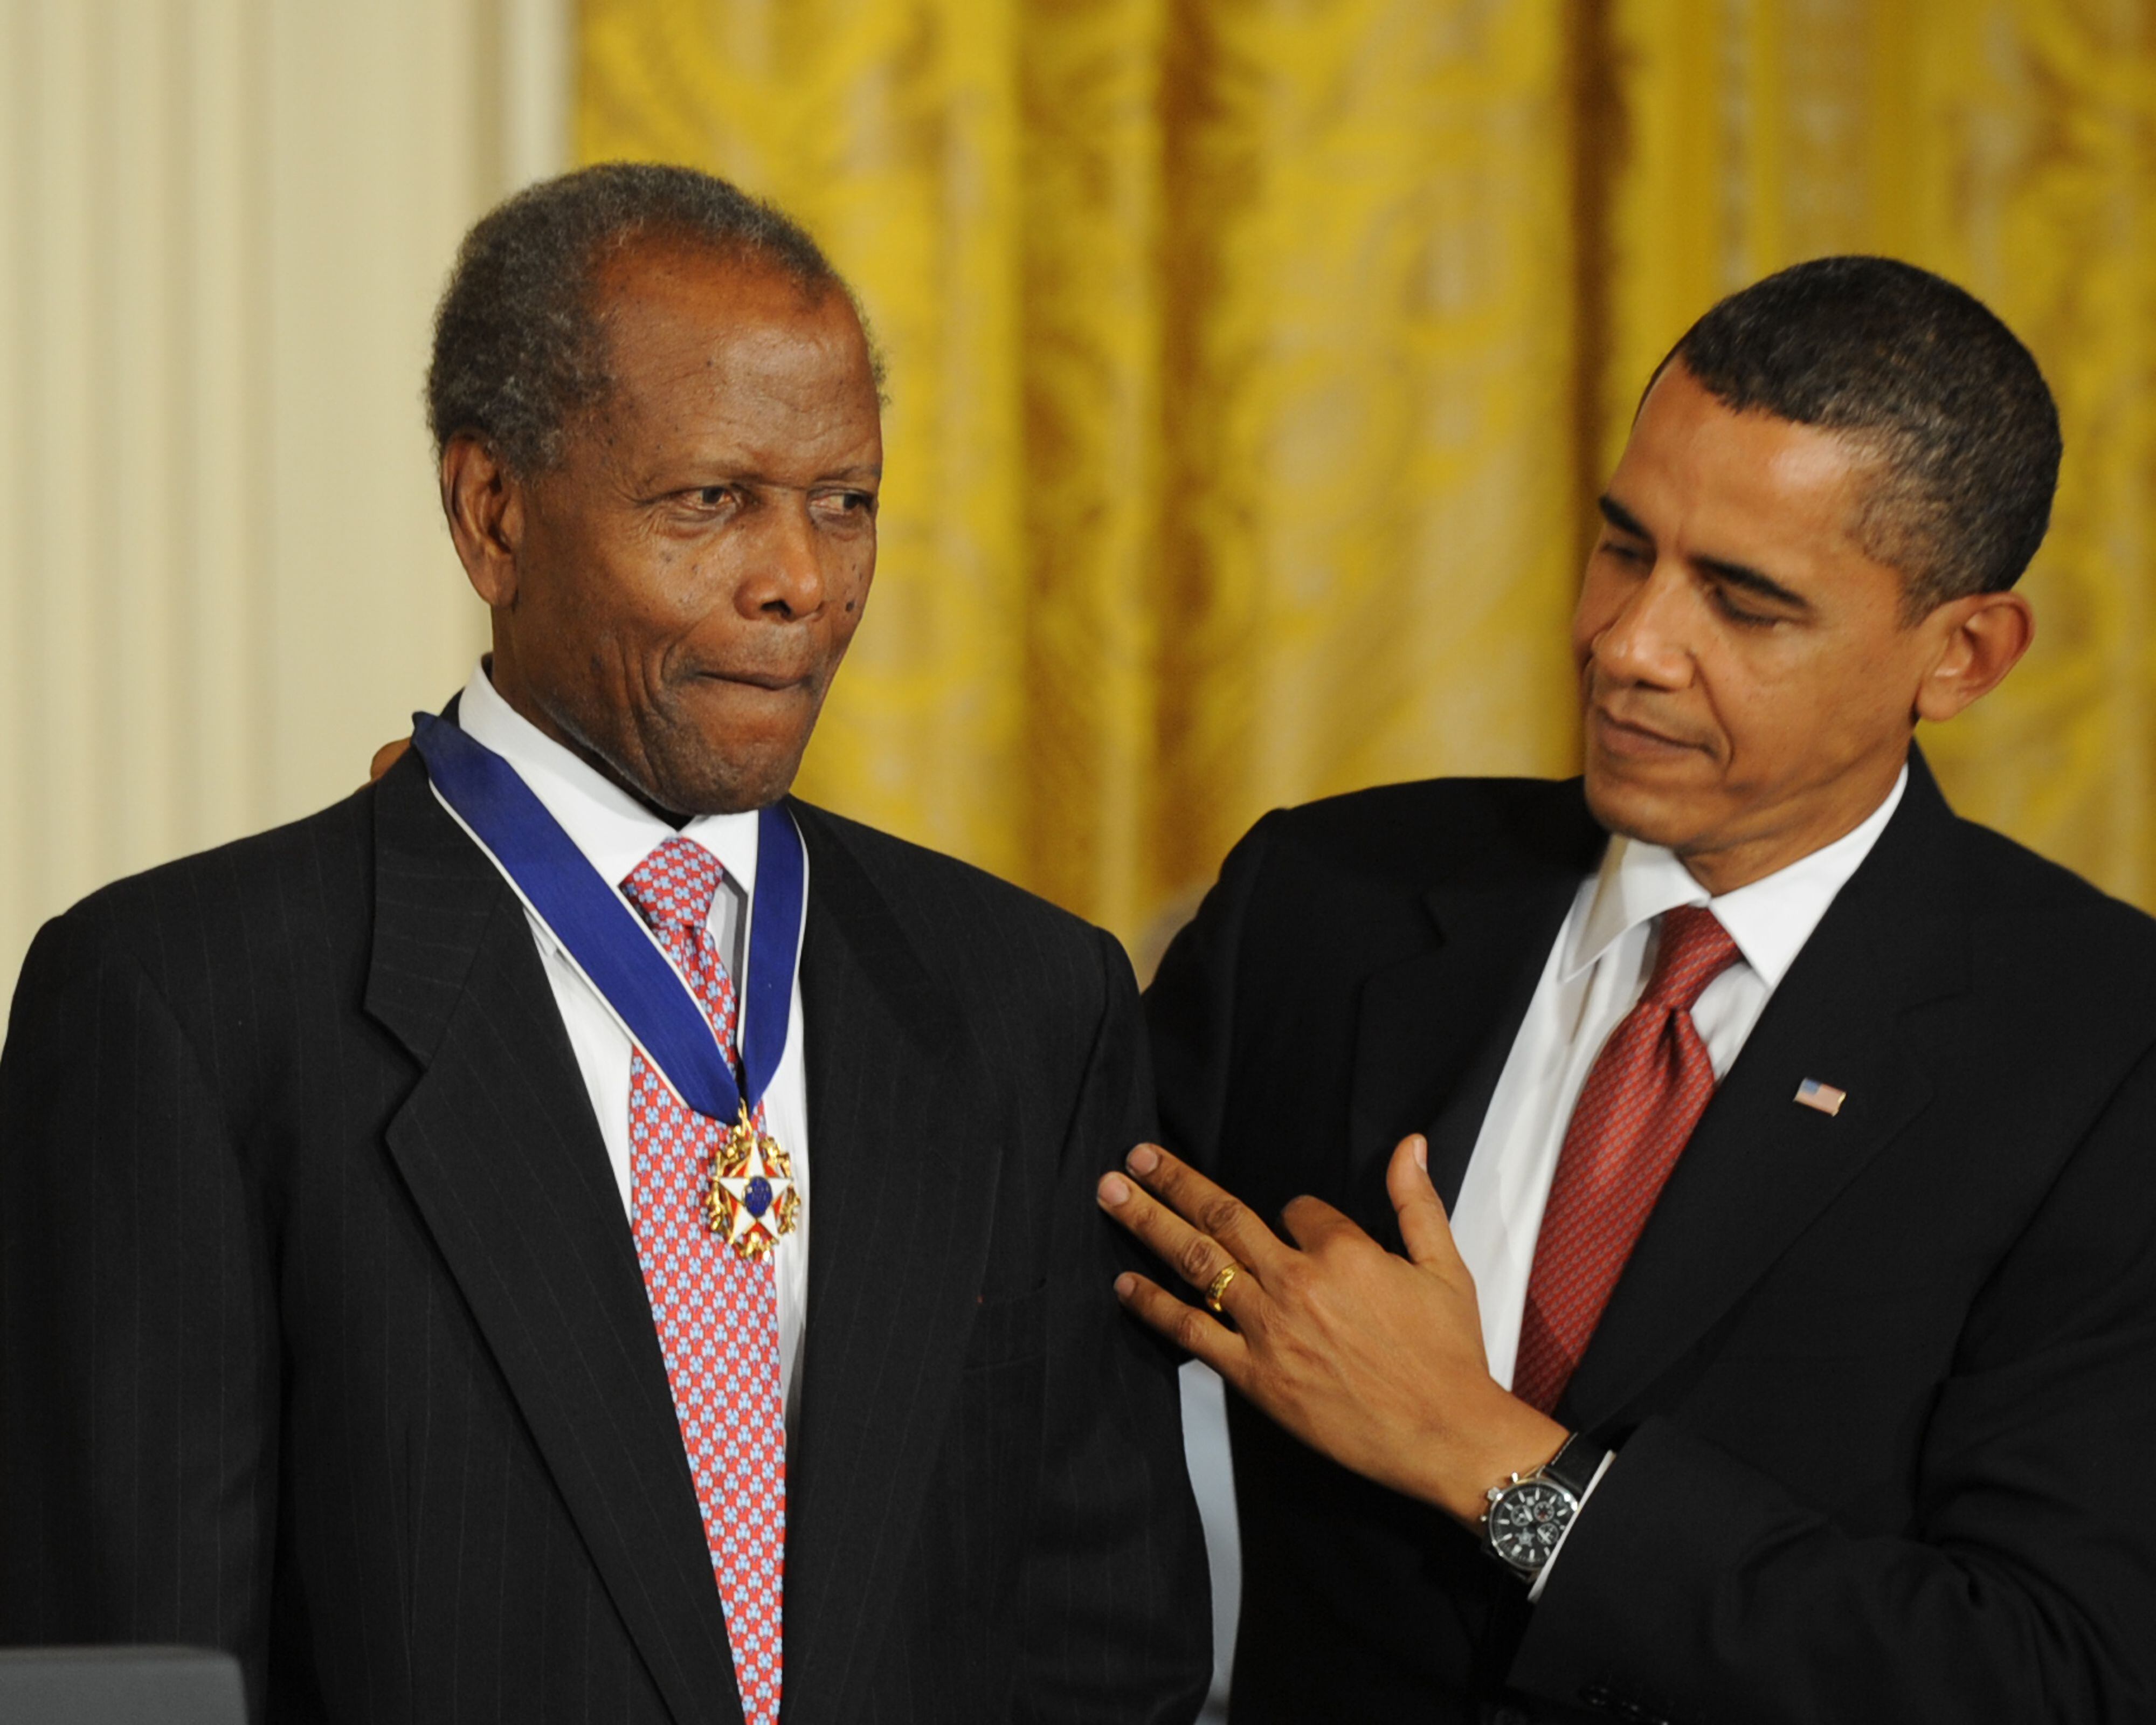 Sidney Poitier, condecorado por Barack Obama con la Medalla de la Libertad, en 2009.